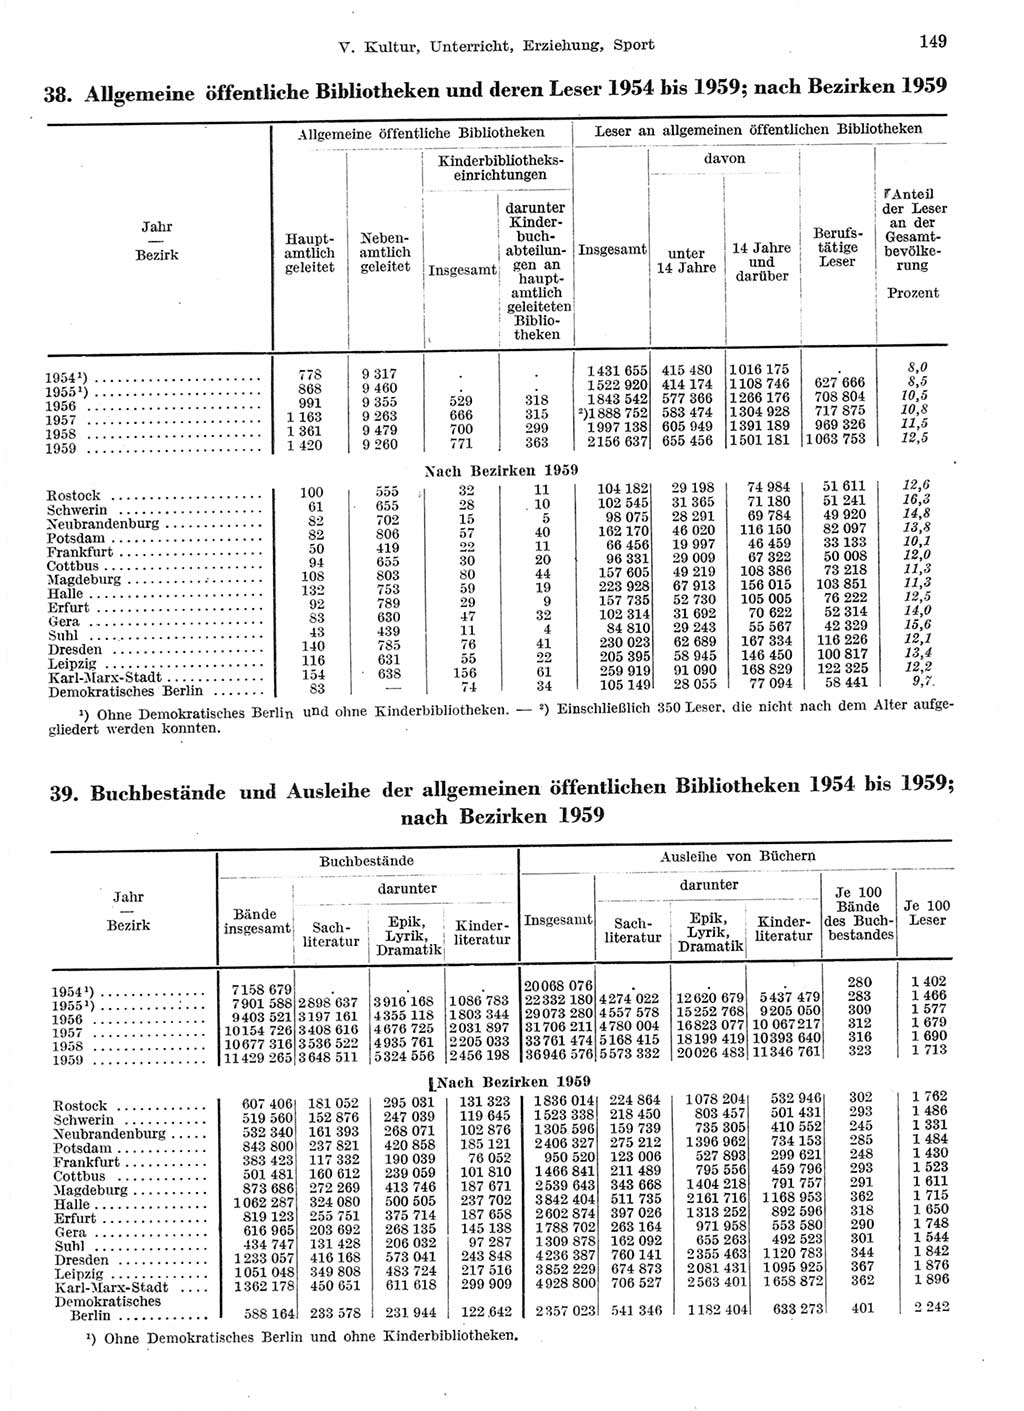 Statistisches Jahrbuch der Deutschen Demokratischen Republik (DDR) 1959, Seite 149 (Stat. Jb. DDR 1959, S. 149)